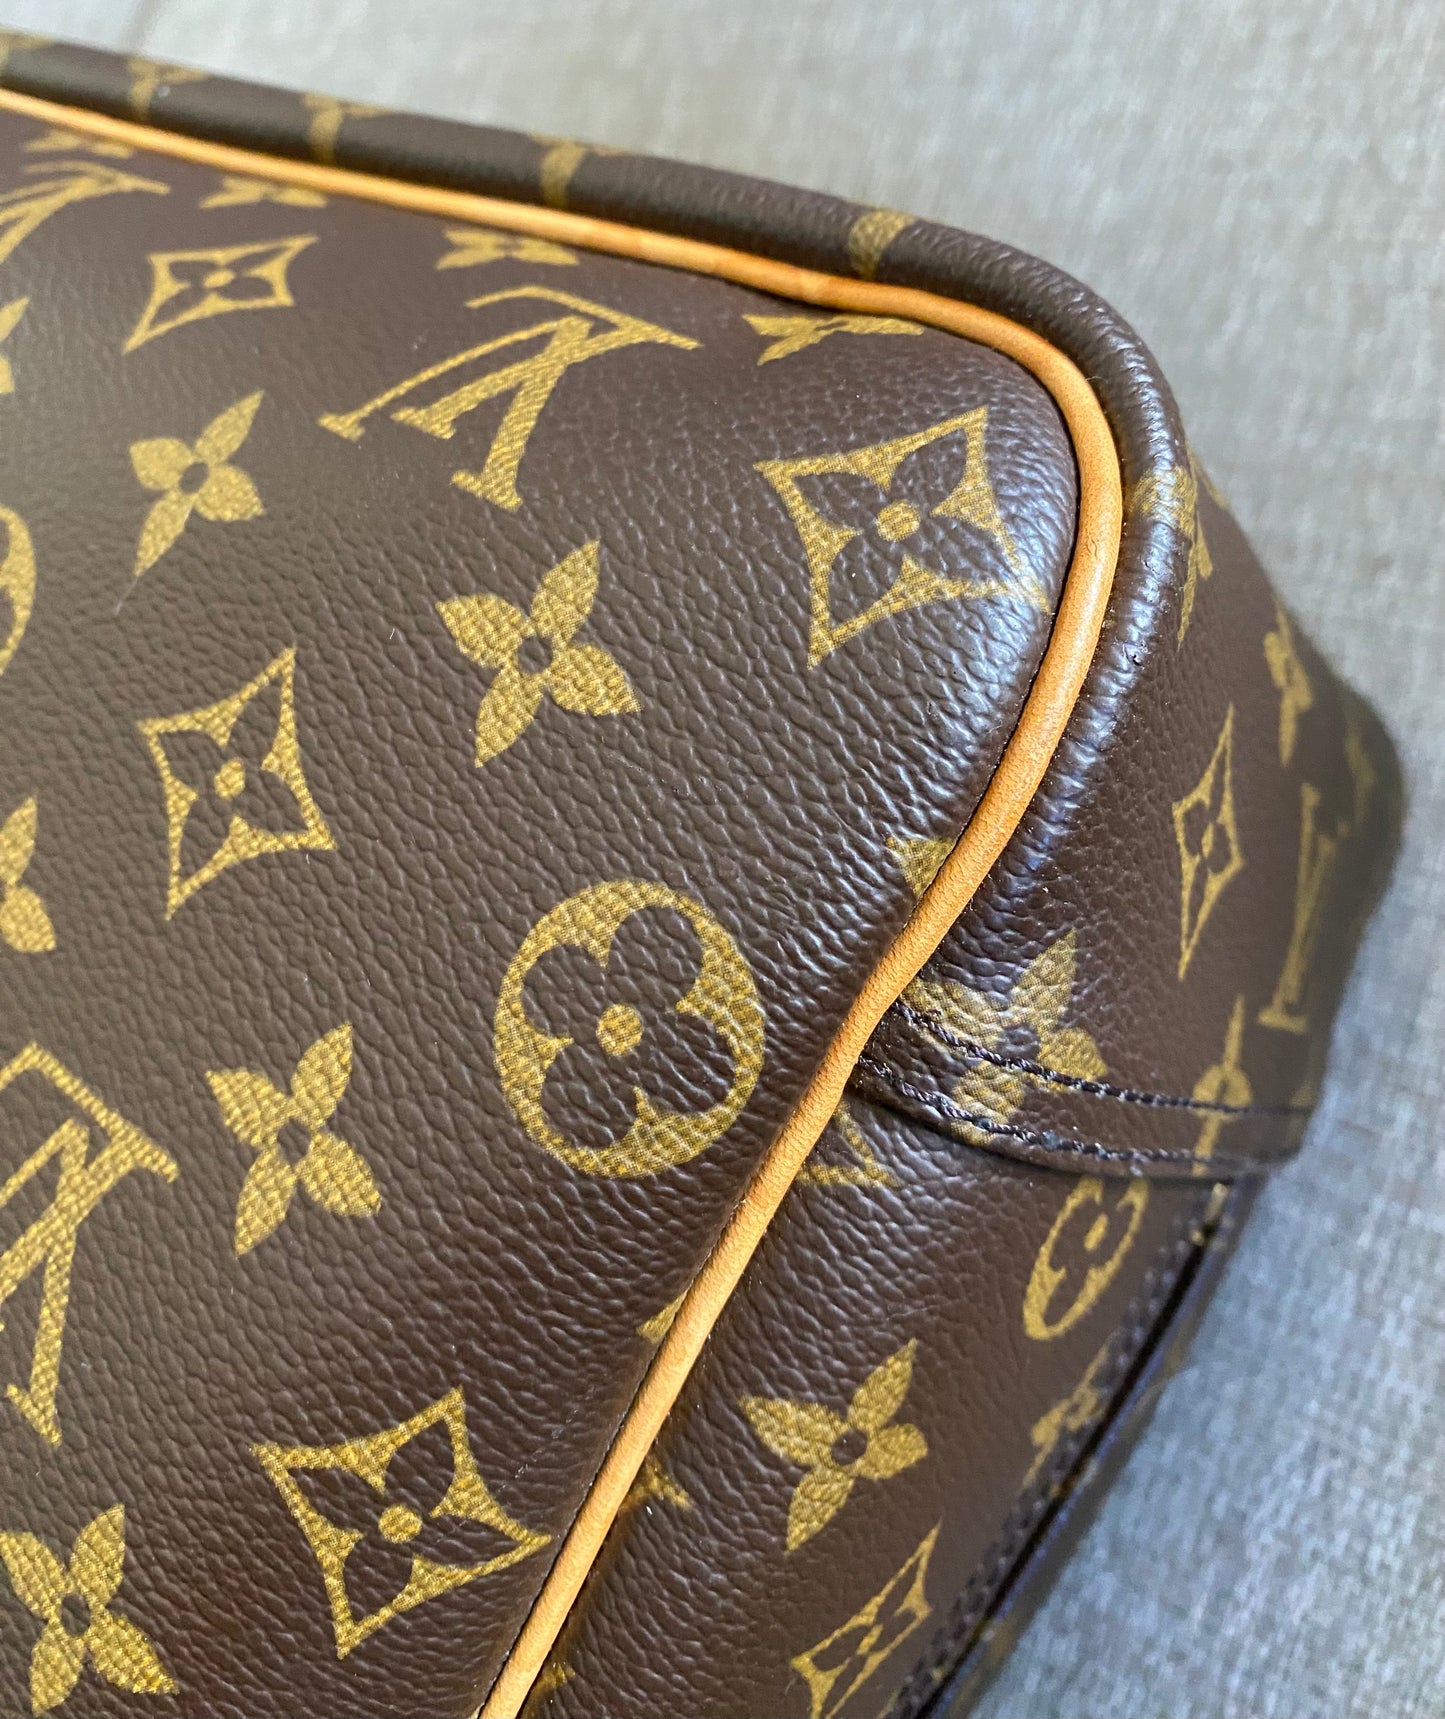 Louis Vuitton Deauville Brown Monogram Travel Everyday Handbag